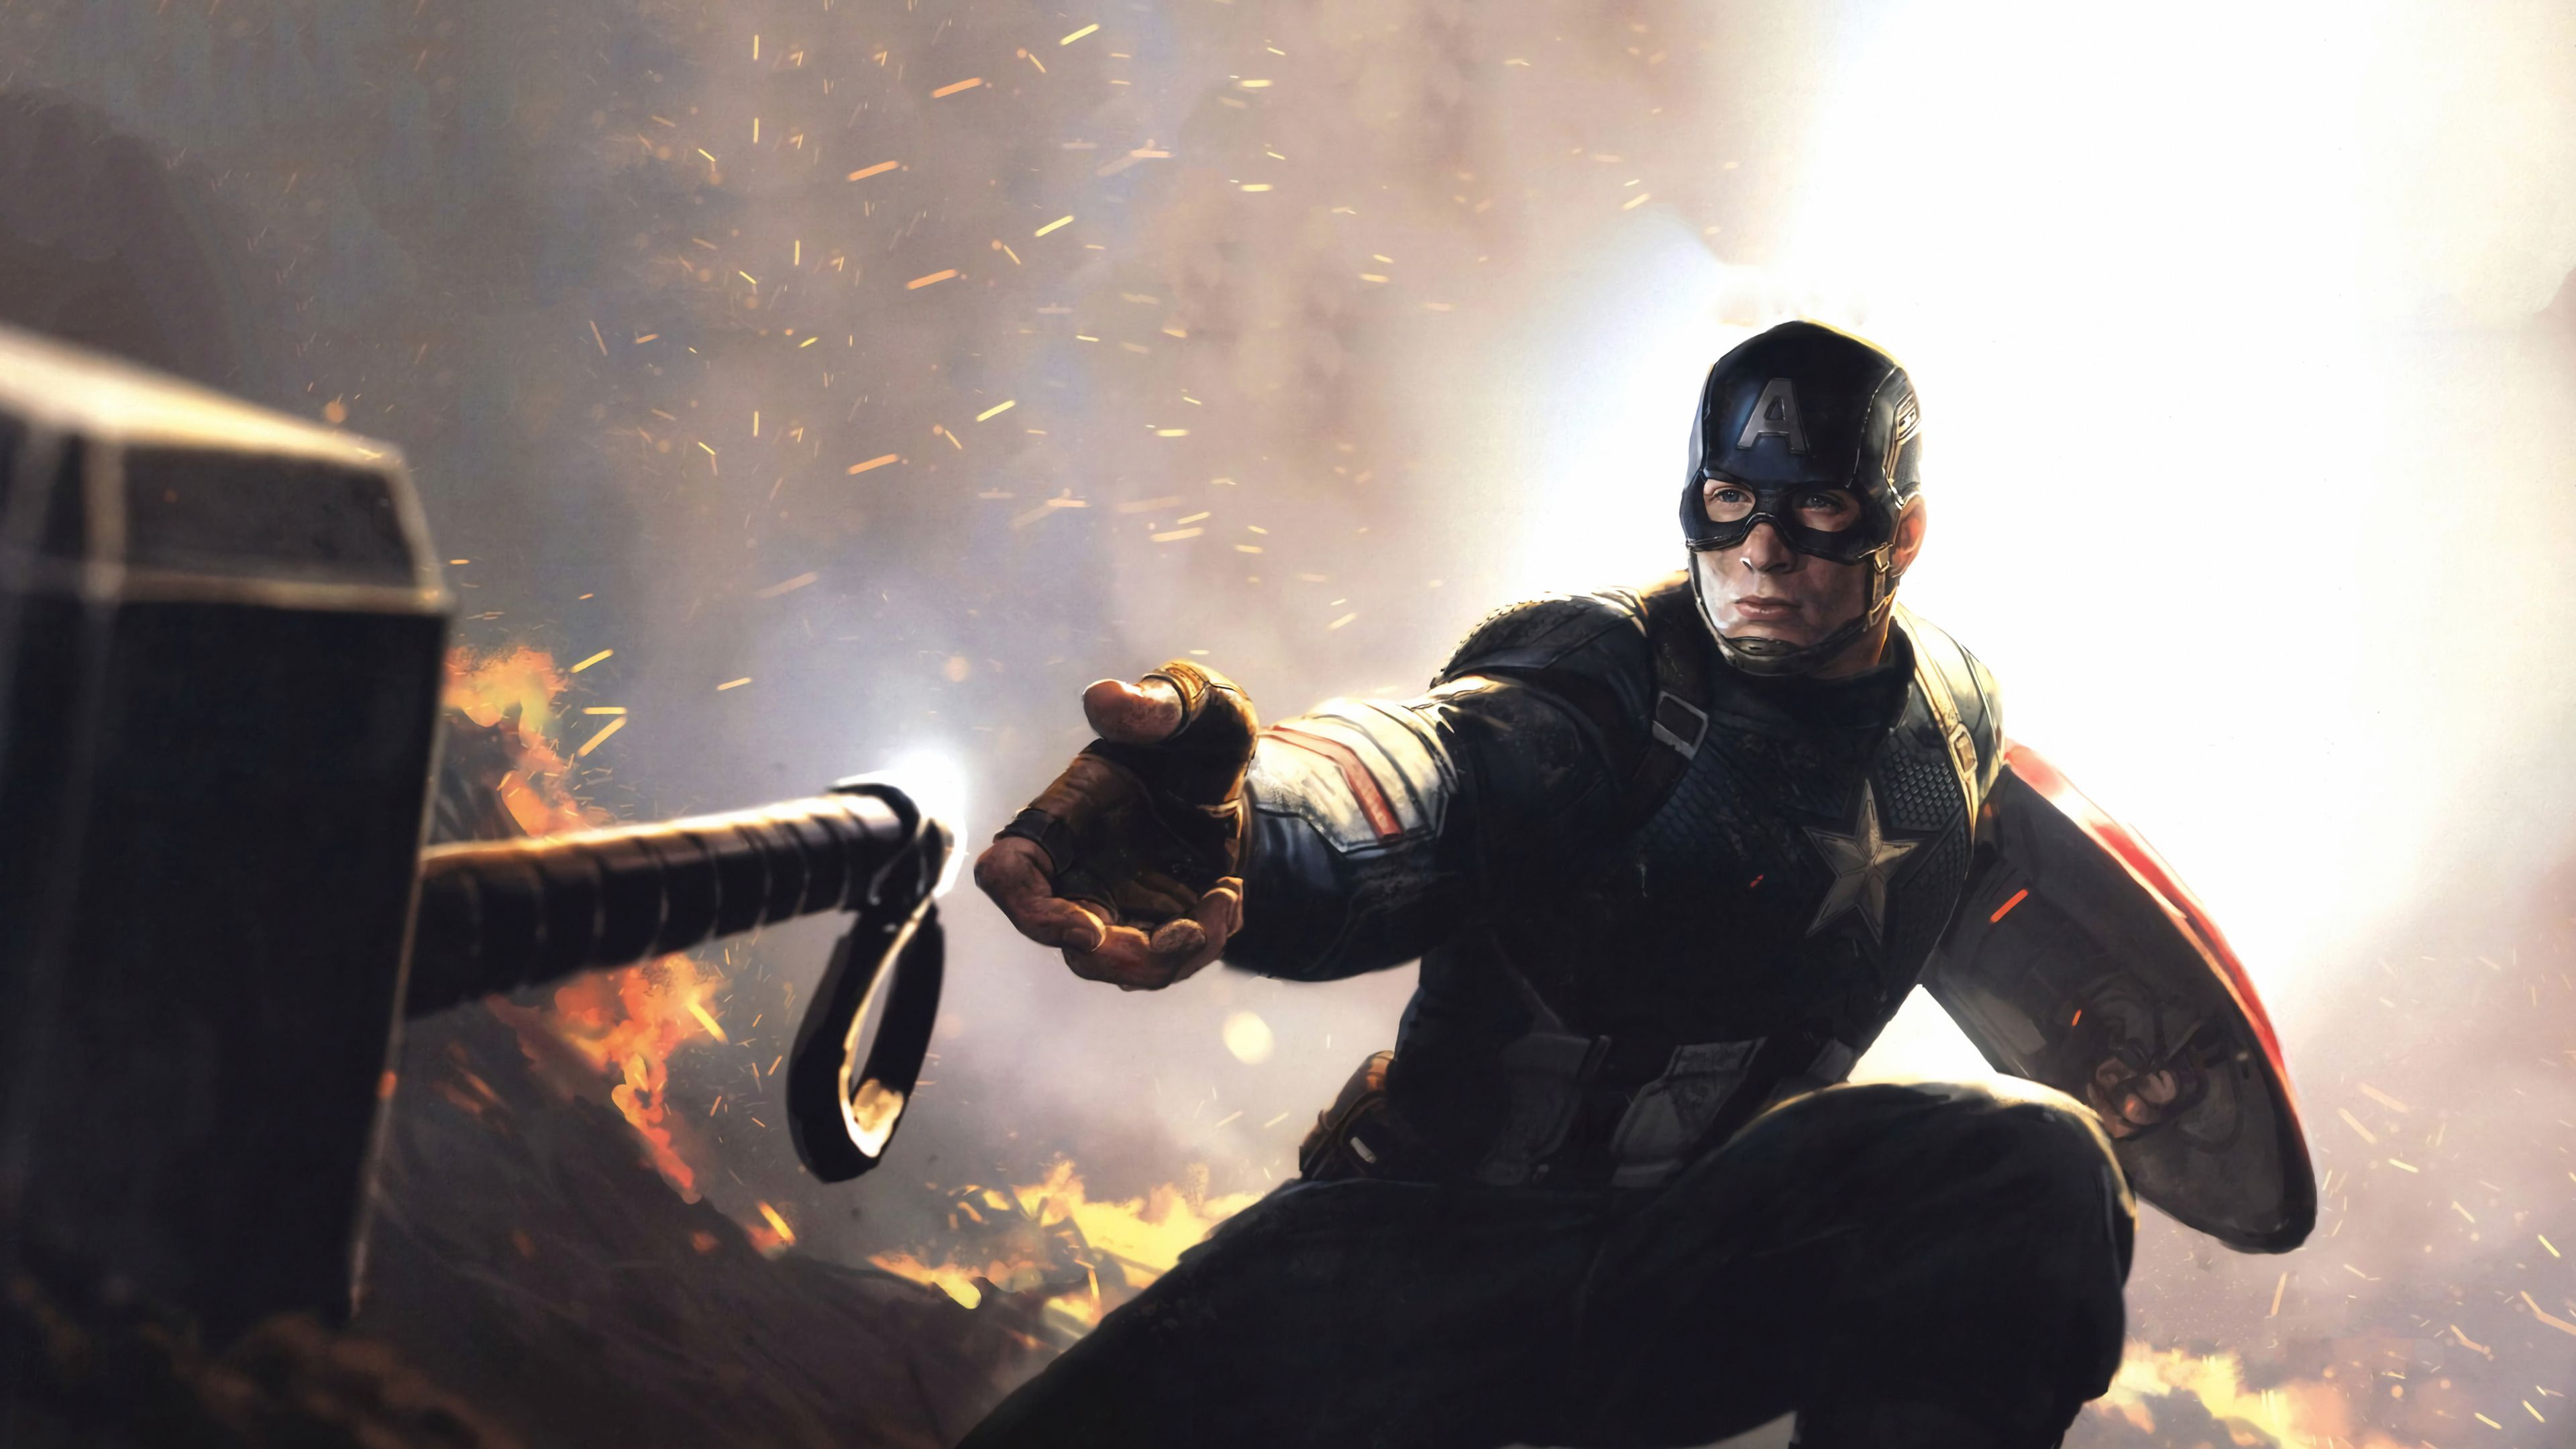 Wallpaper 4k Captain America Avengers Endgame 2019 4k Wallpaper